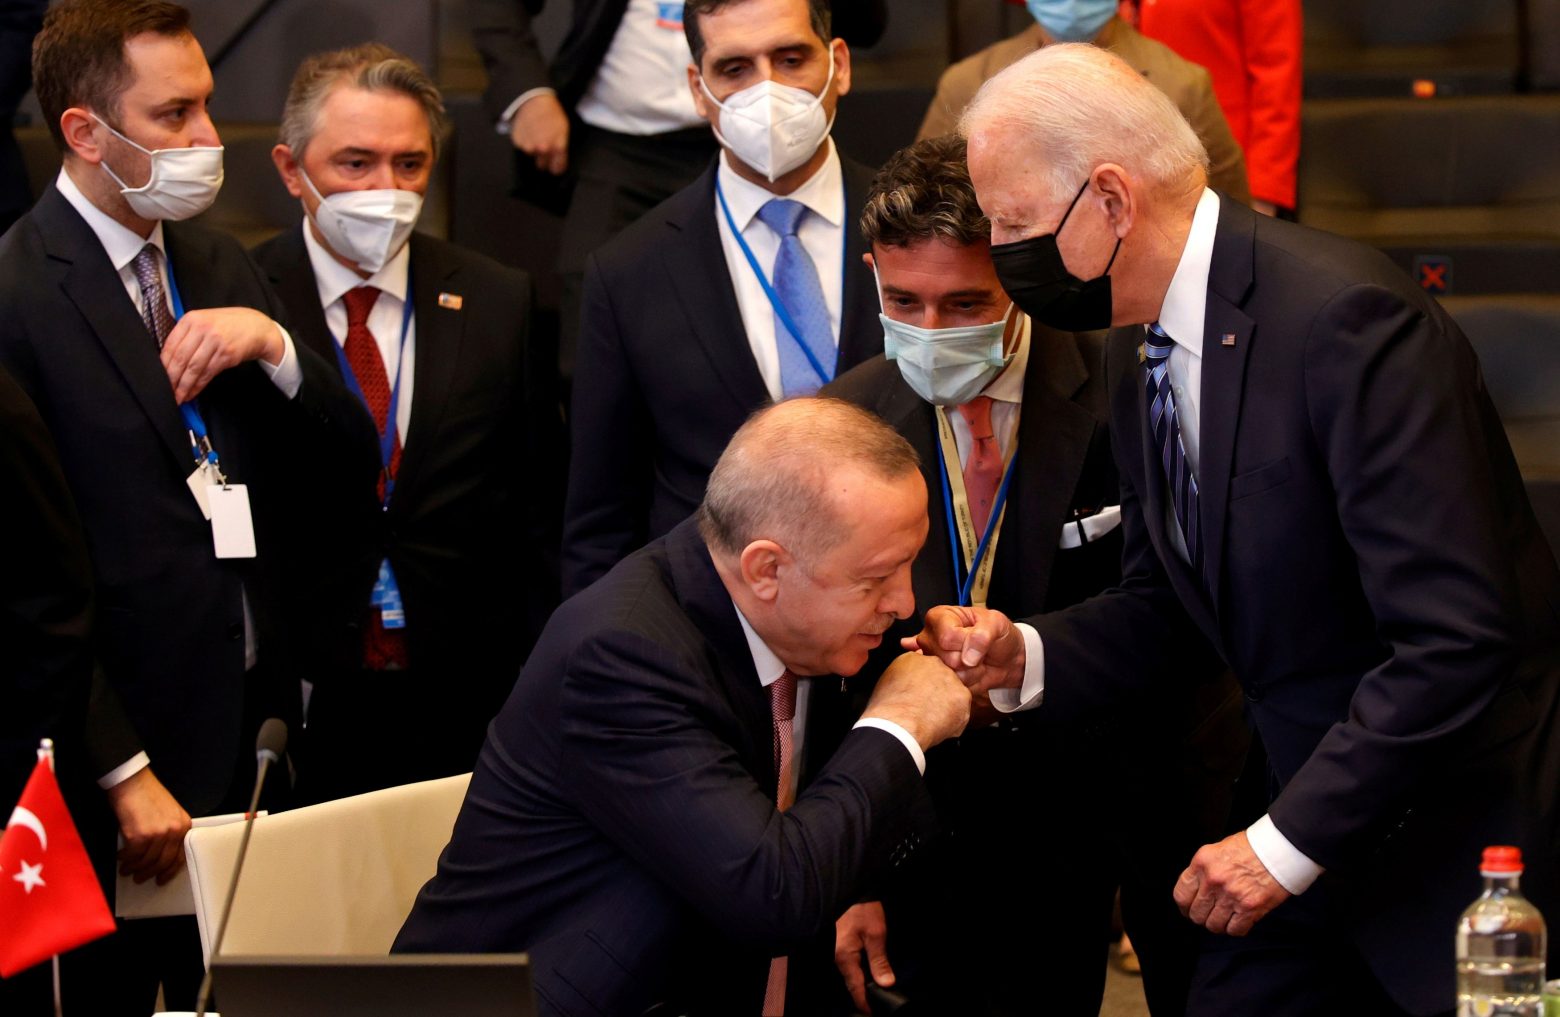 Σύνοδος ΝΑΤΟ: Ο χαιρετισμός Ερντογάν στον Μπάιντεν θυμίζει... χειροφίλημα